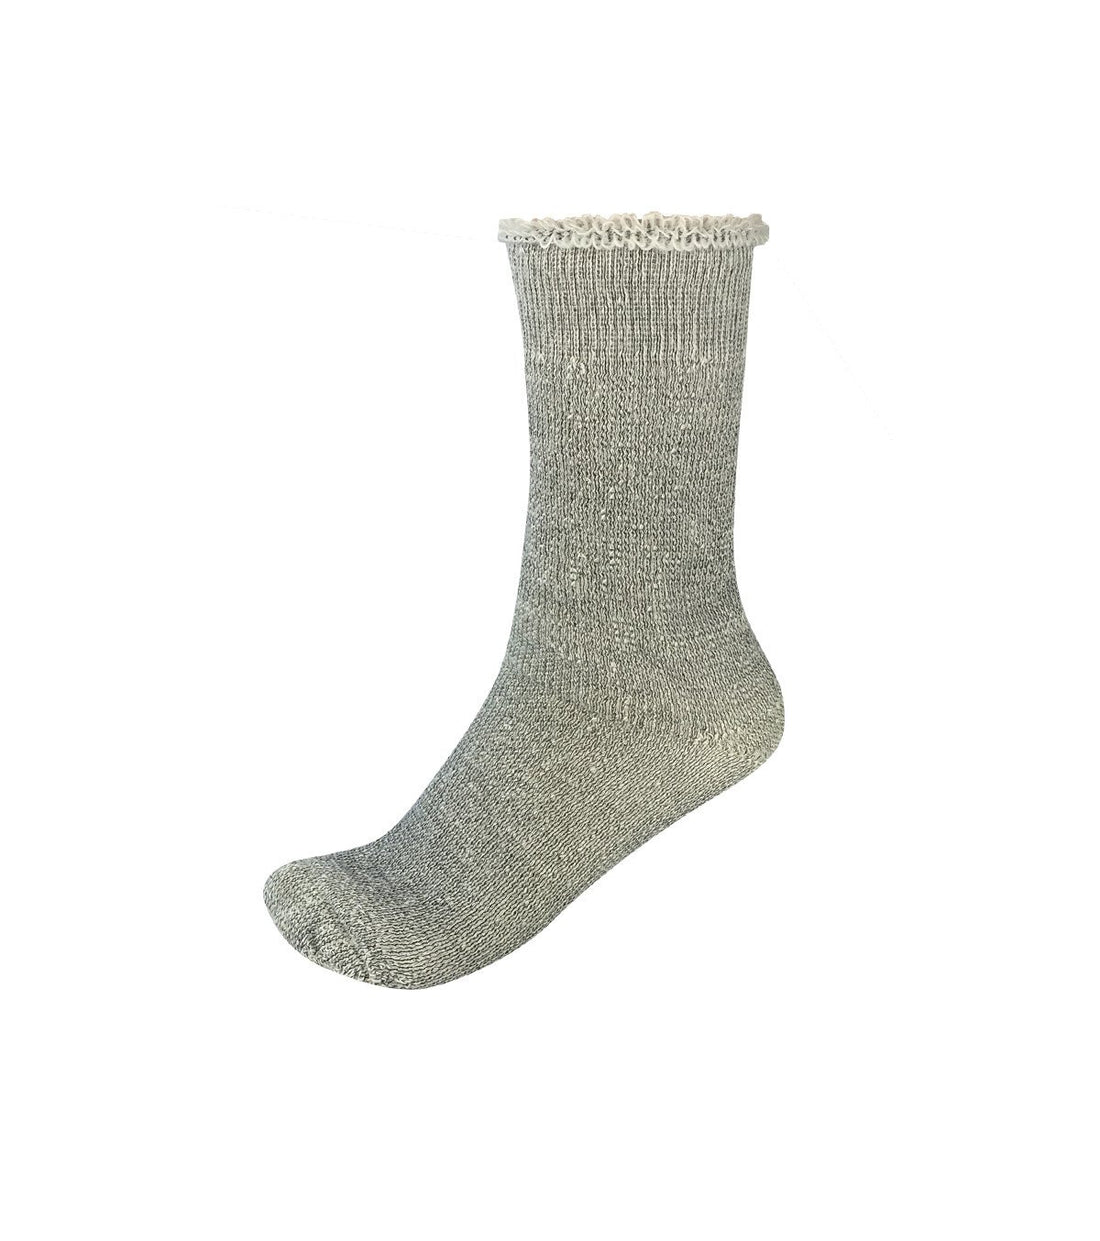 Thermohair - Mohair Socks